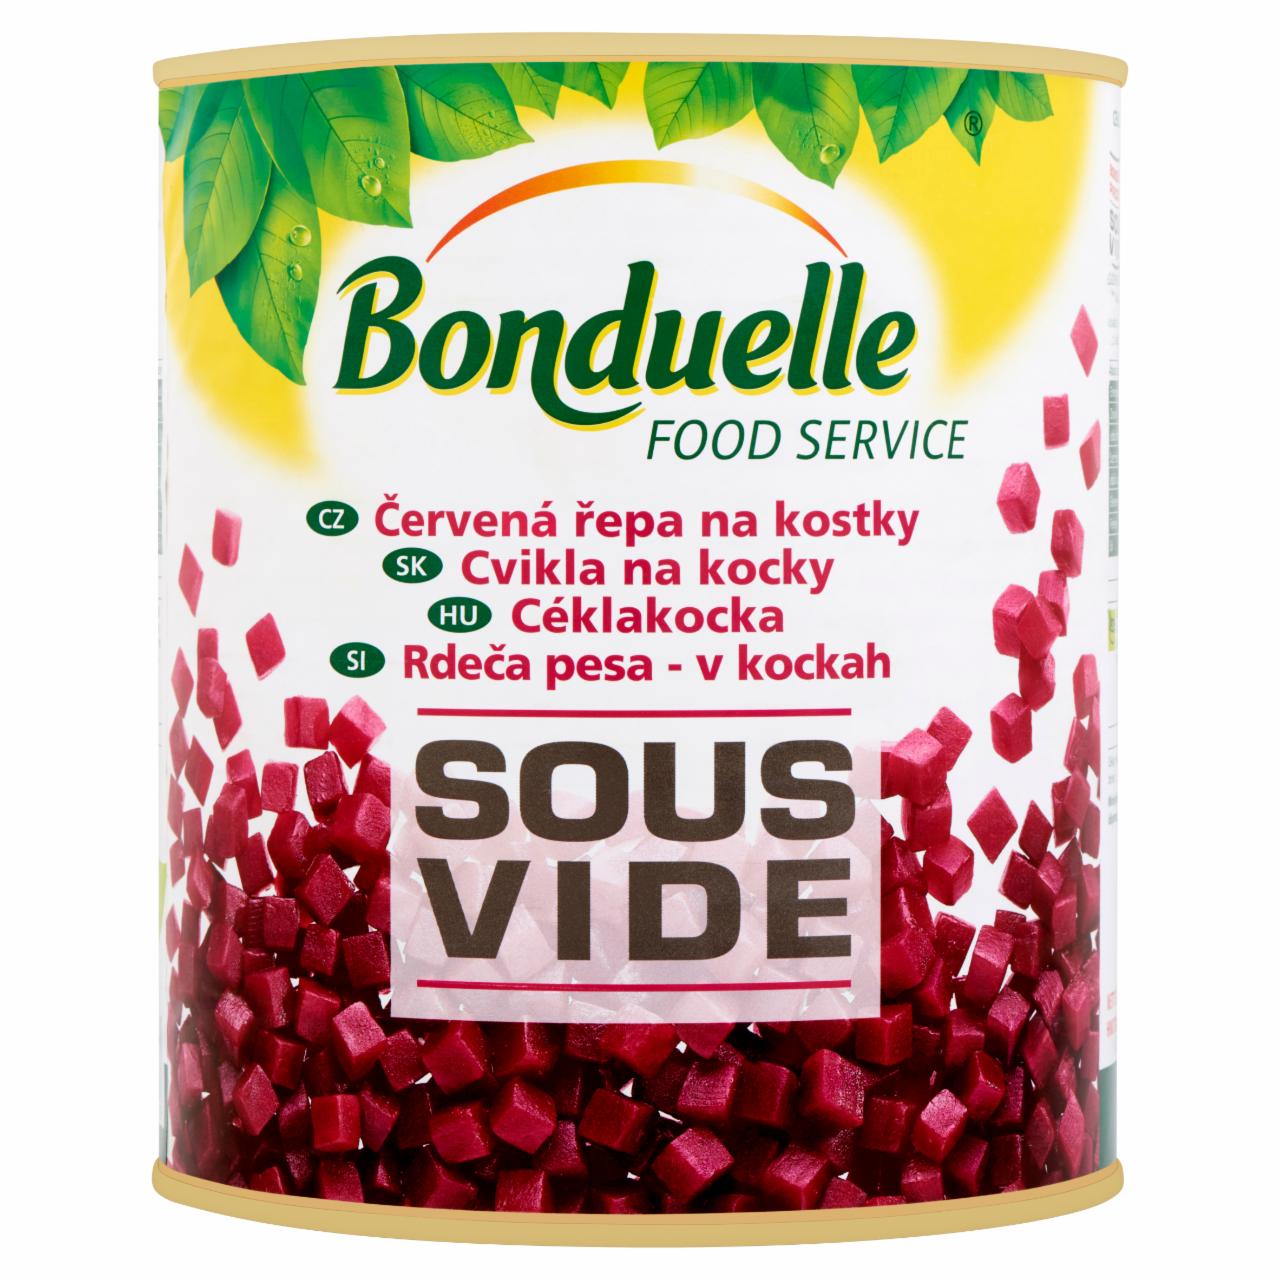 Képek - Bonduelle Food Service Sous Vide gőzben párolt céklakocka 2295 g